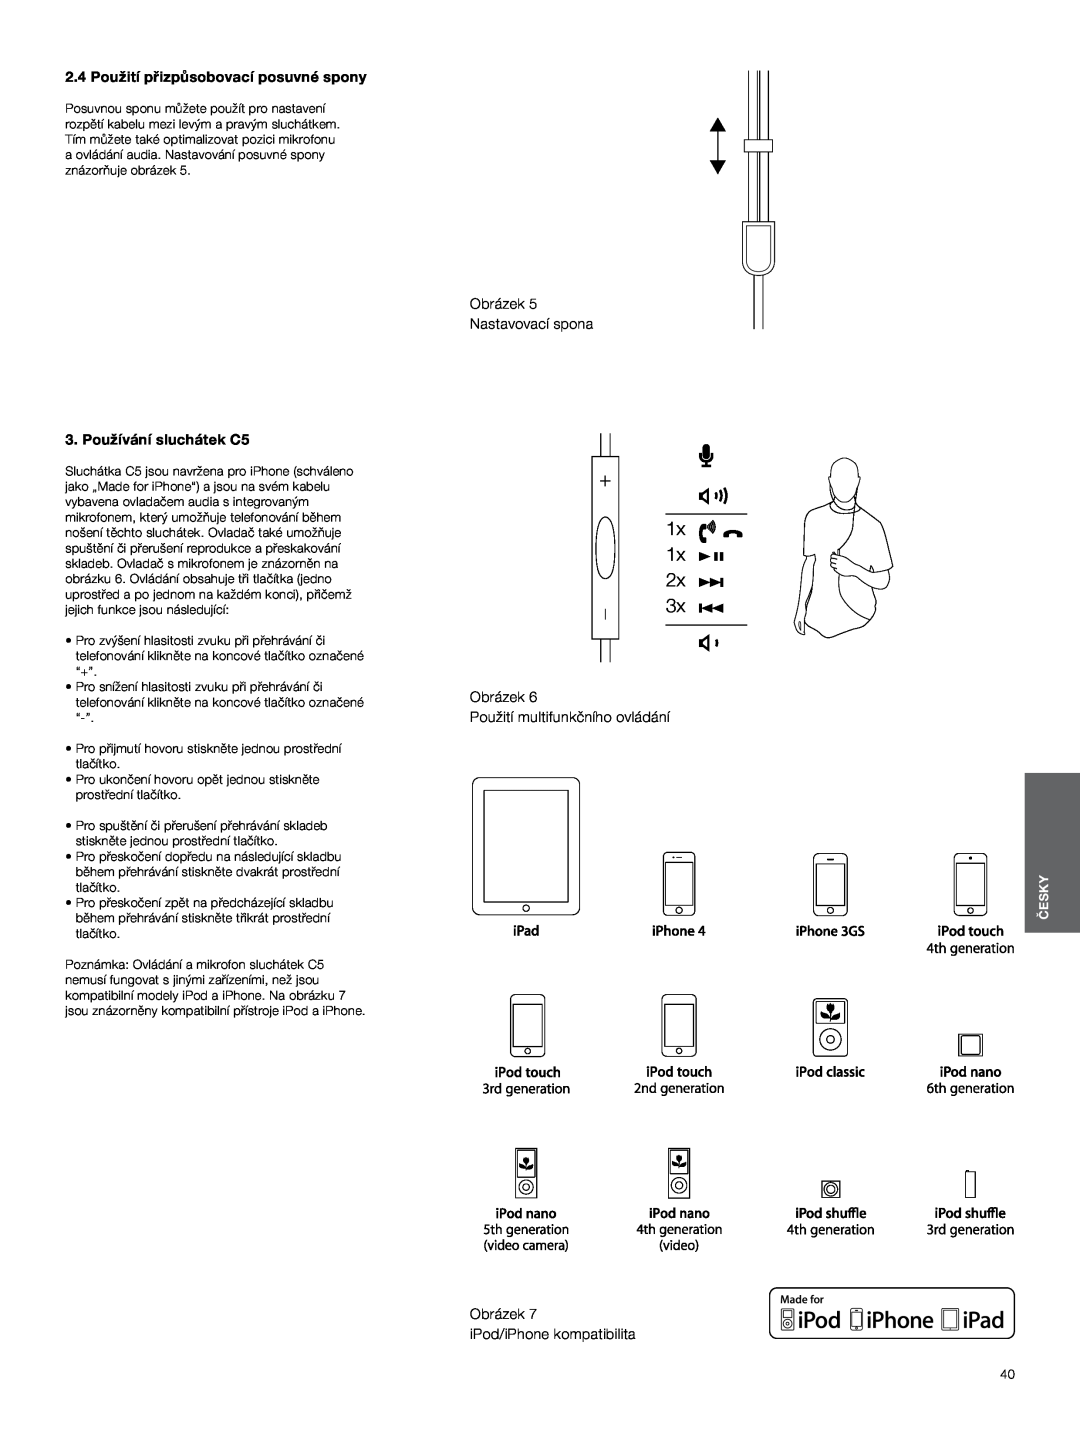 Bowers & Wilkins 1x, 2.4 Použití přizpůsobovací posuvné spony, Používání sluchátek C5, Obrázek Nastavovací spona, Česky 